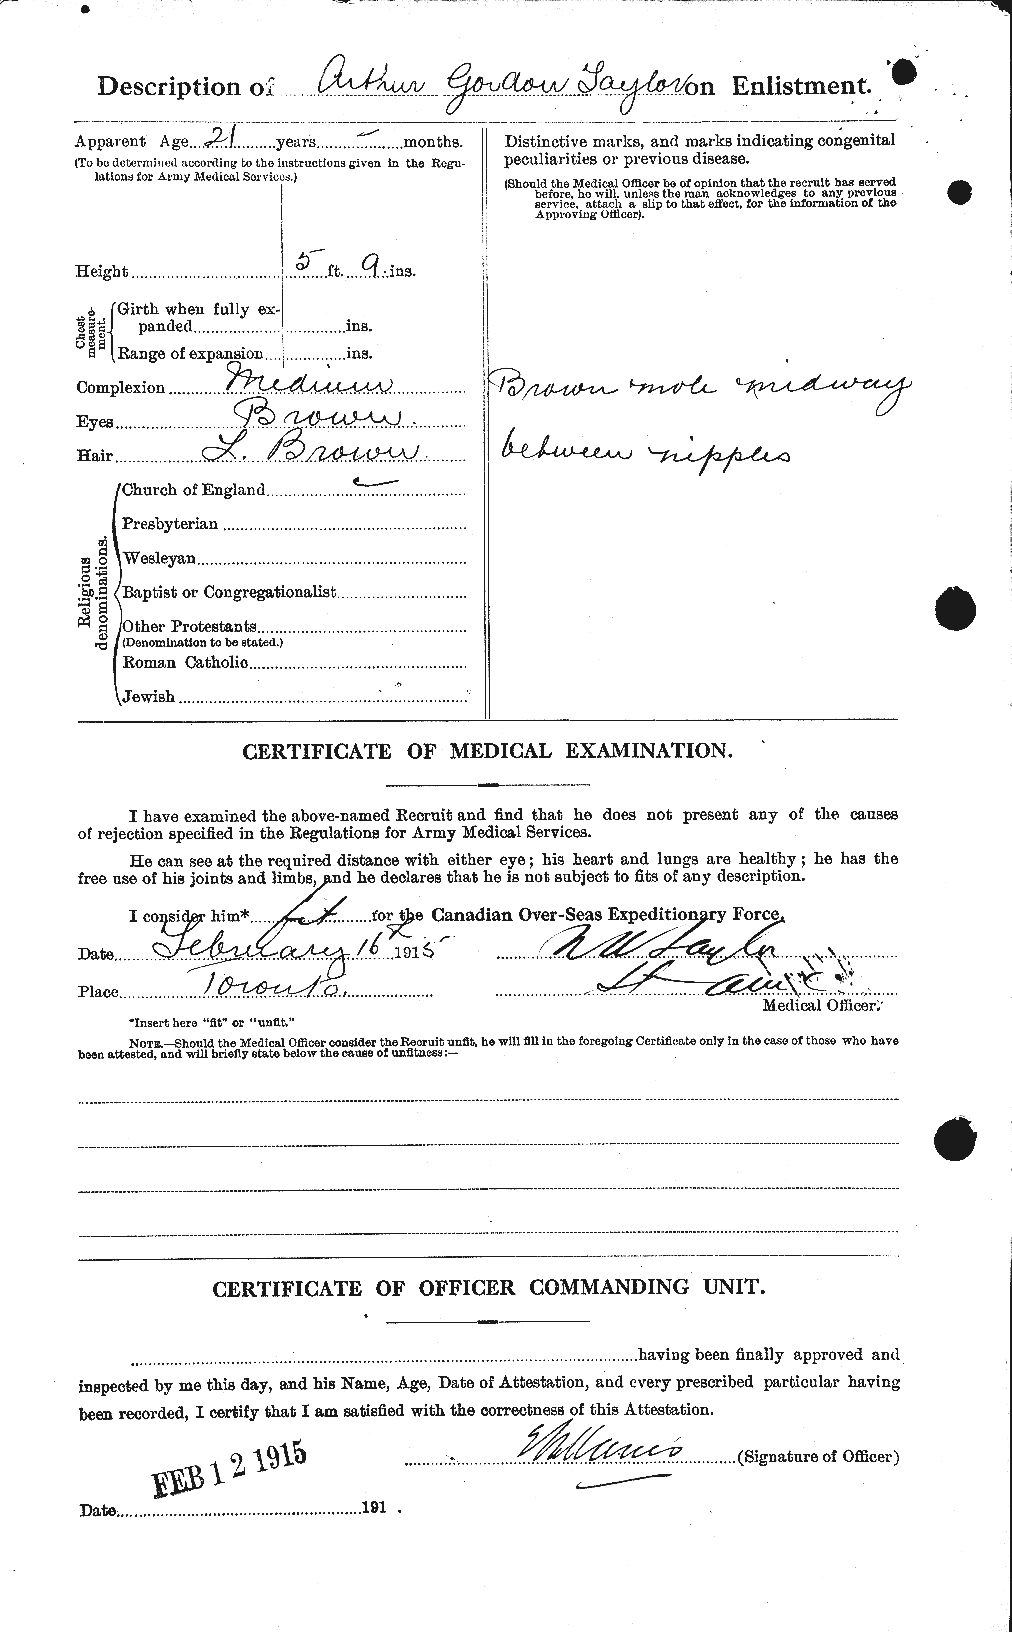 Dossiers du Personnel de la Première Guerre mondiale - CEC 626724b